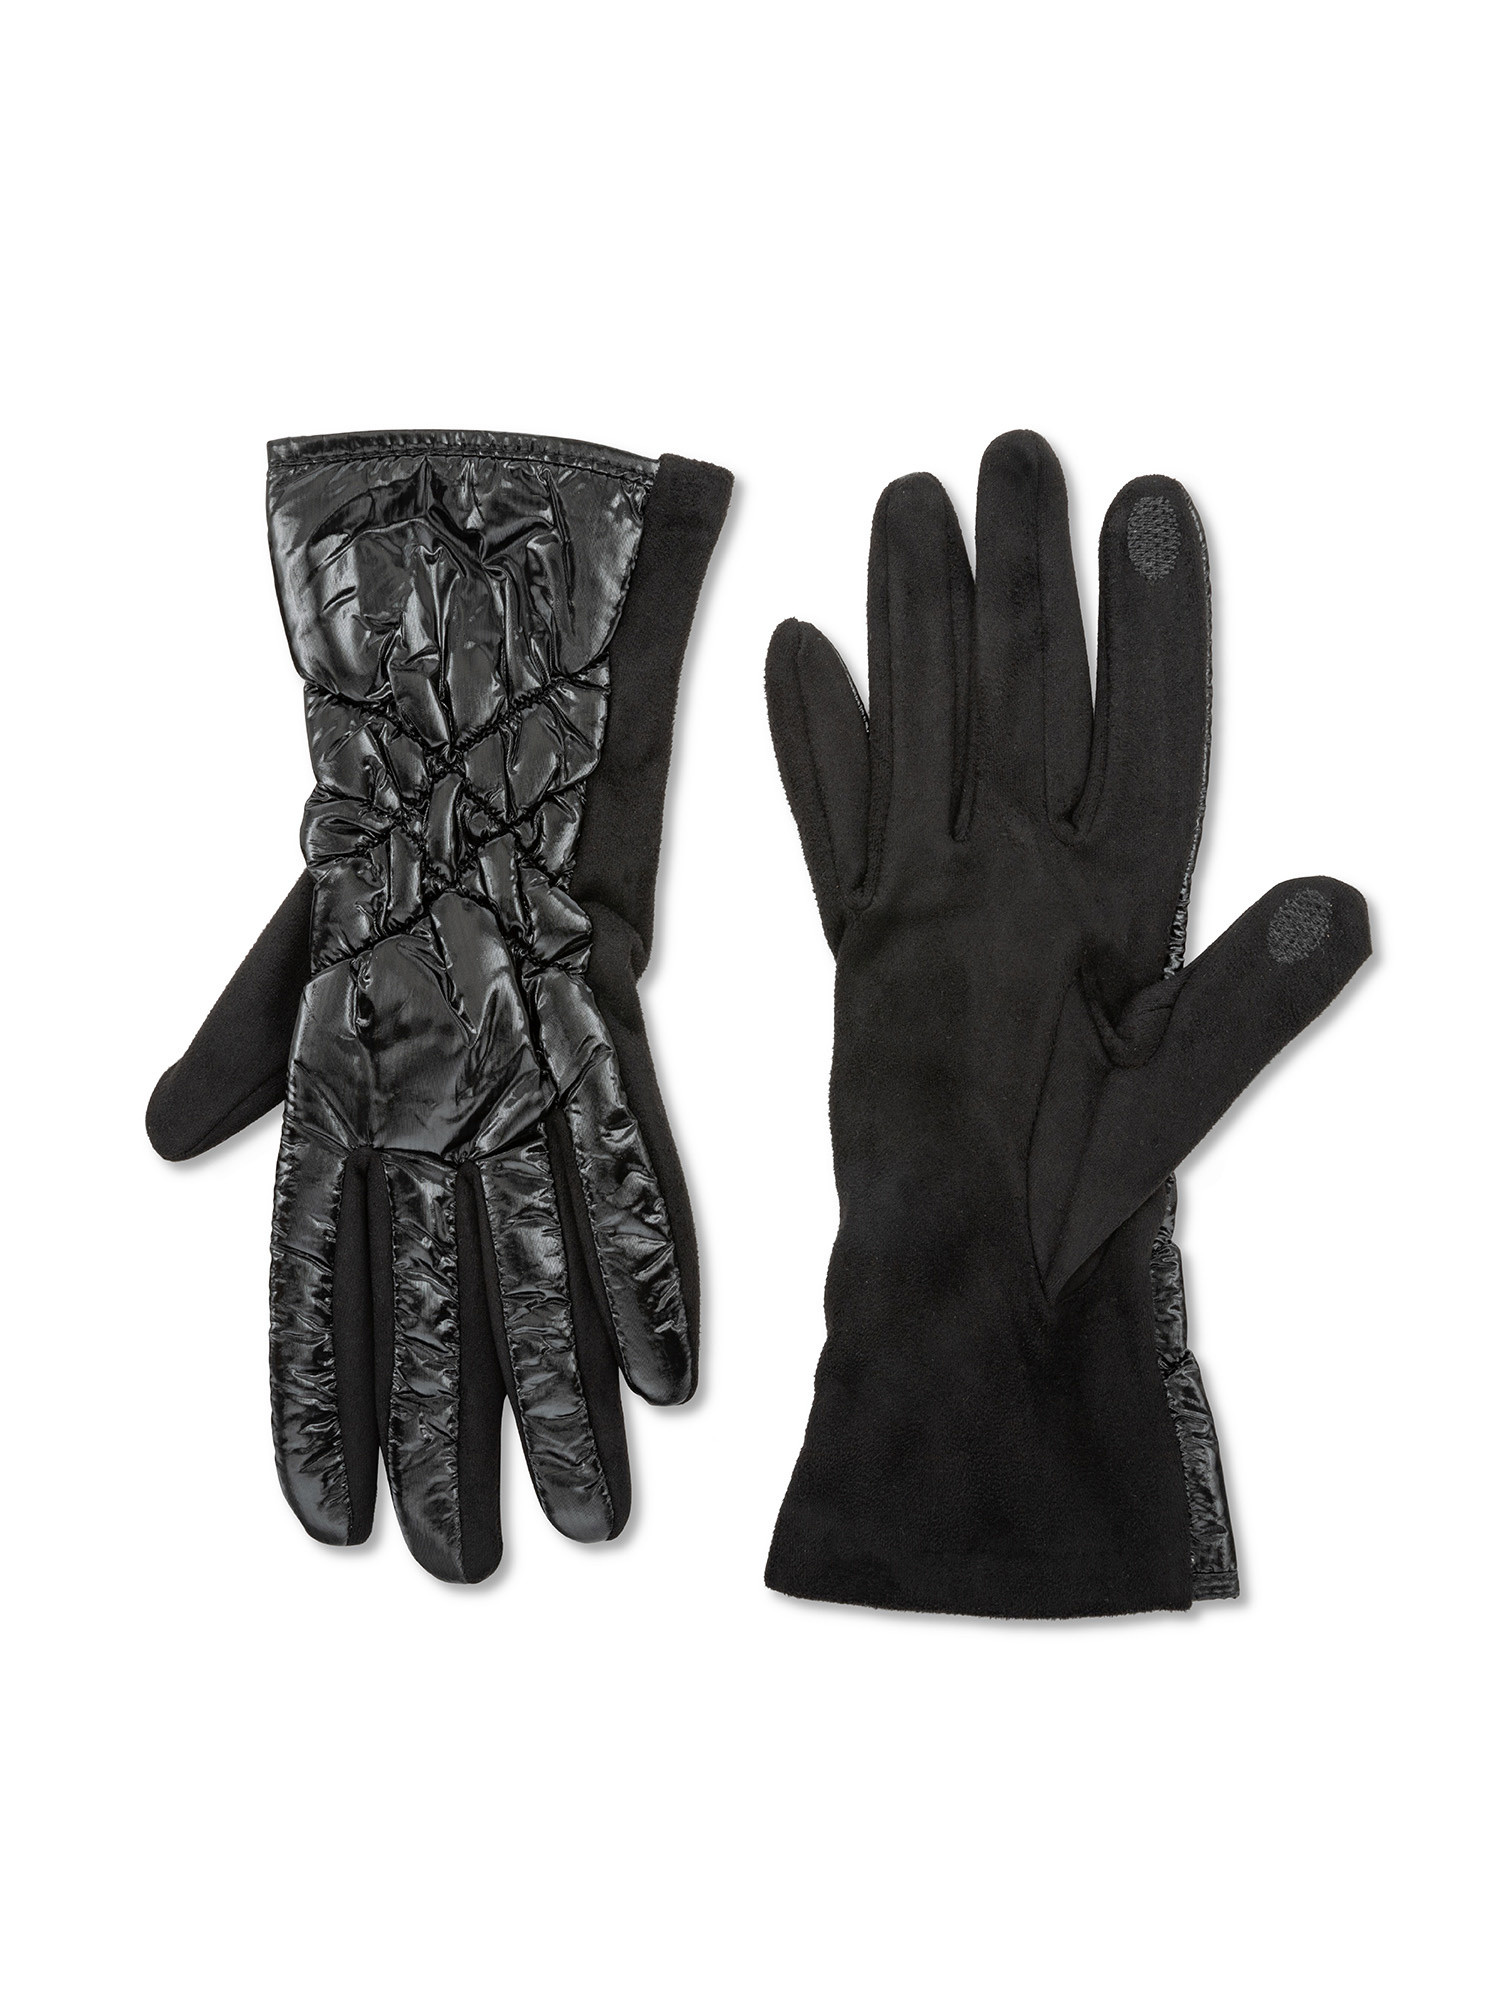 Koan - Quilted gloves, Black, large image number 0